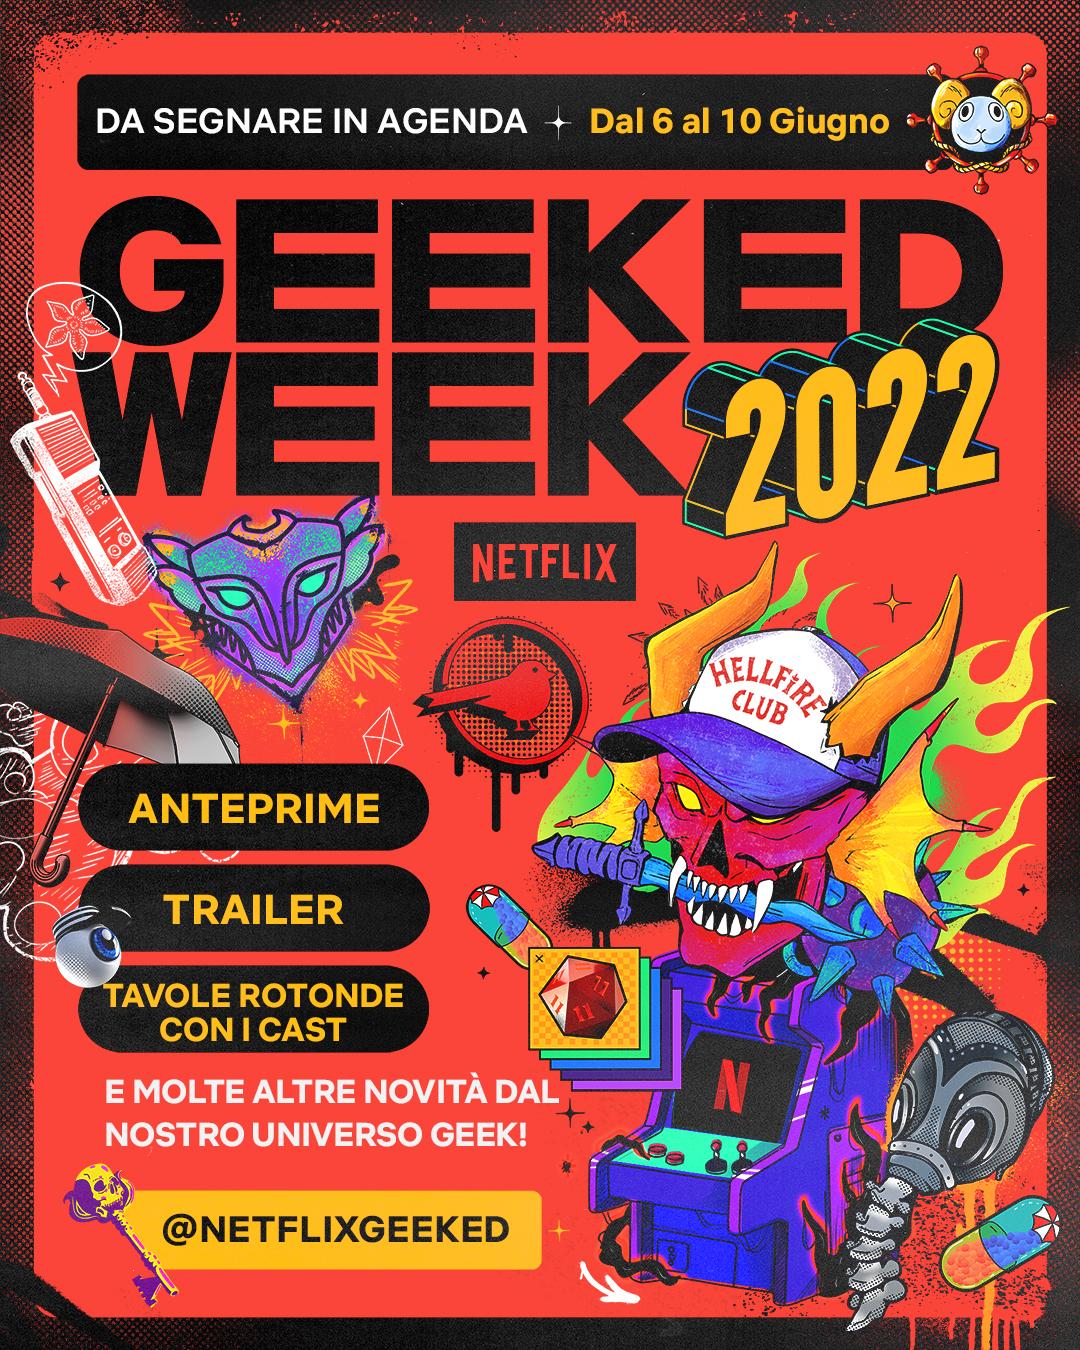 Промо Geeked Week 2022